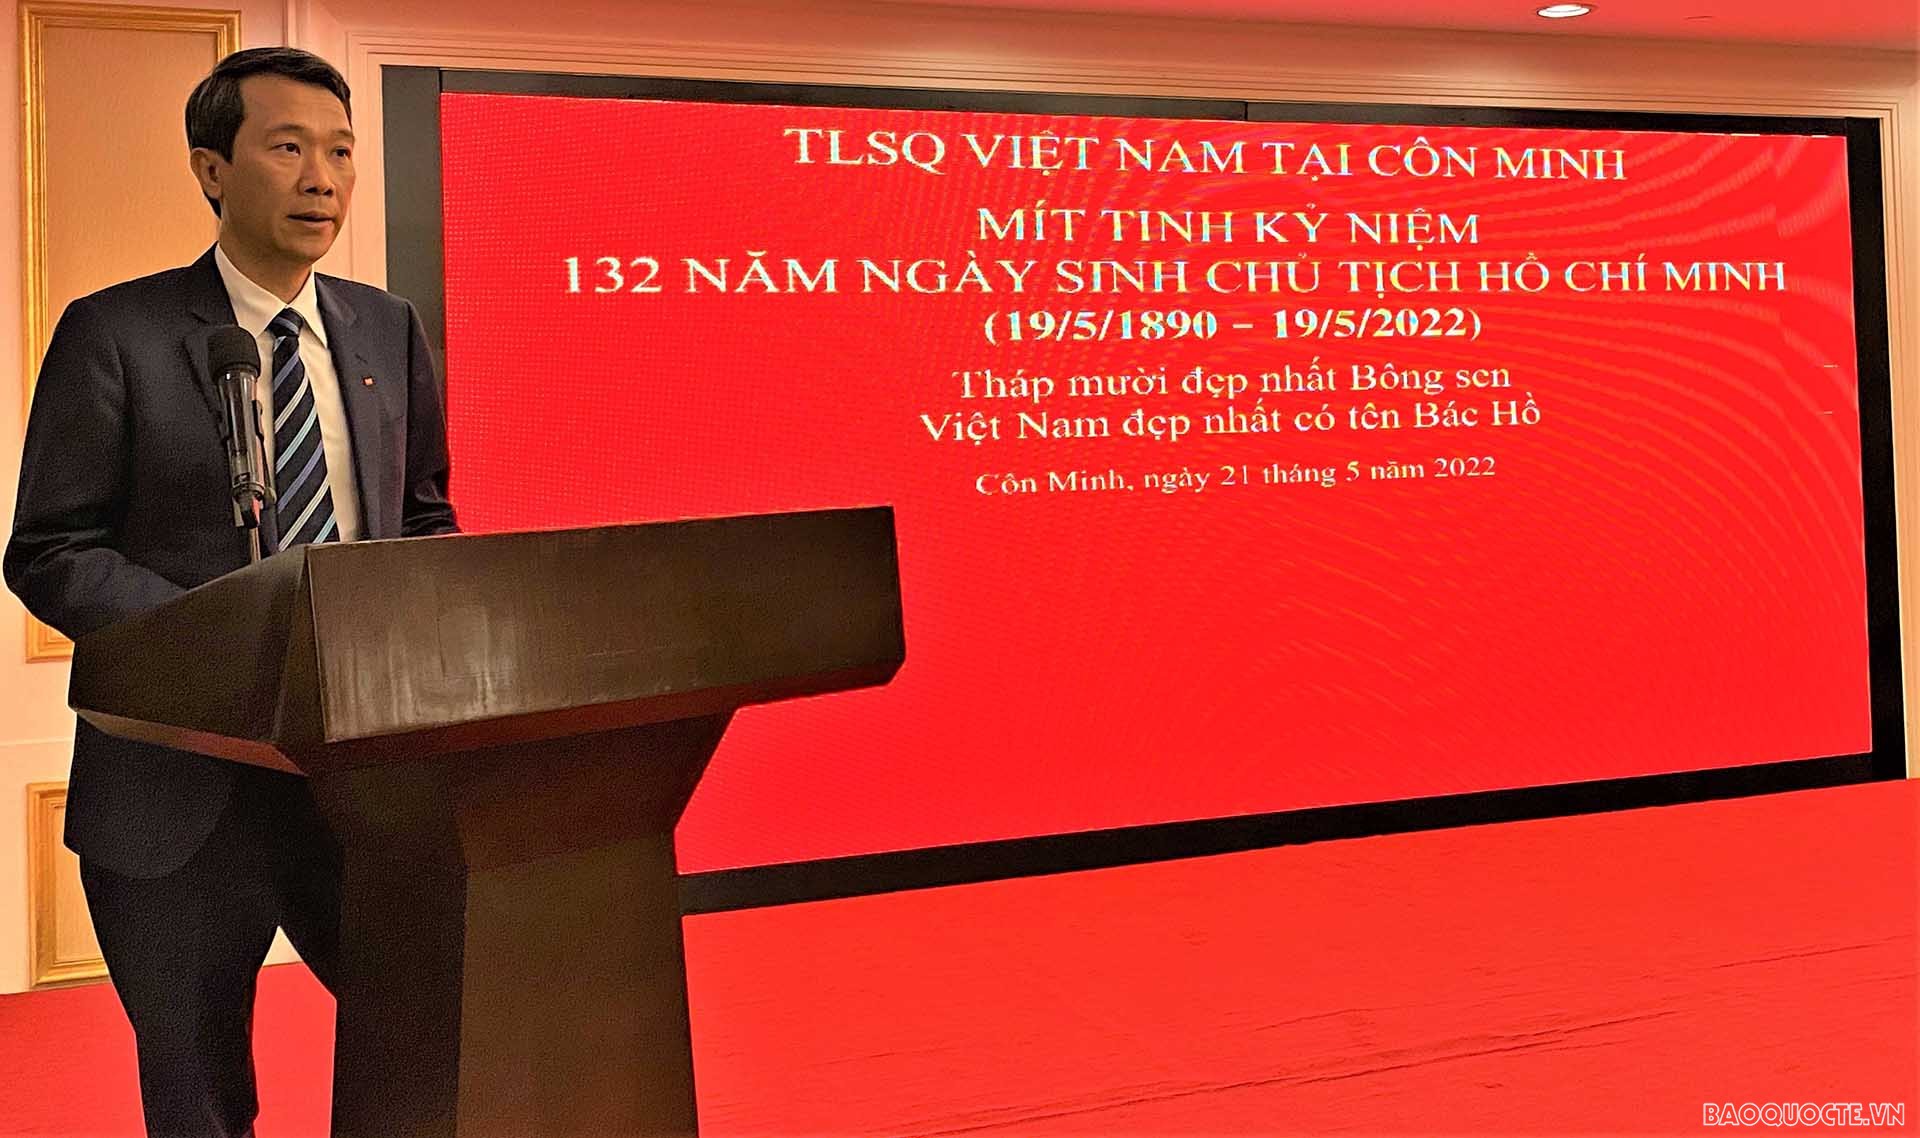 Tổng lãnh sự Nguyễn Trung Hiếu phát biểu.